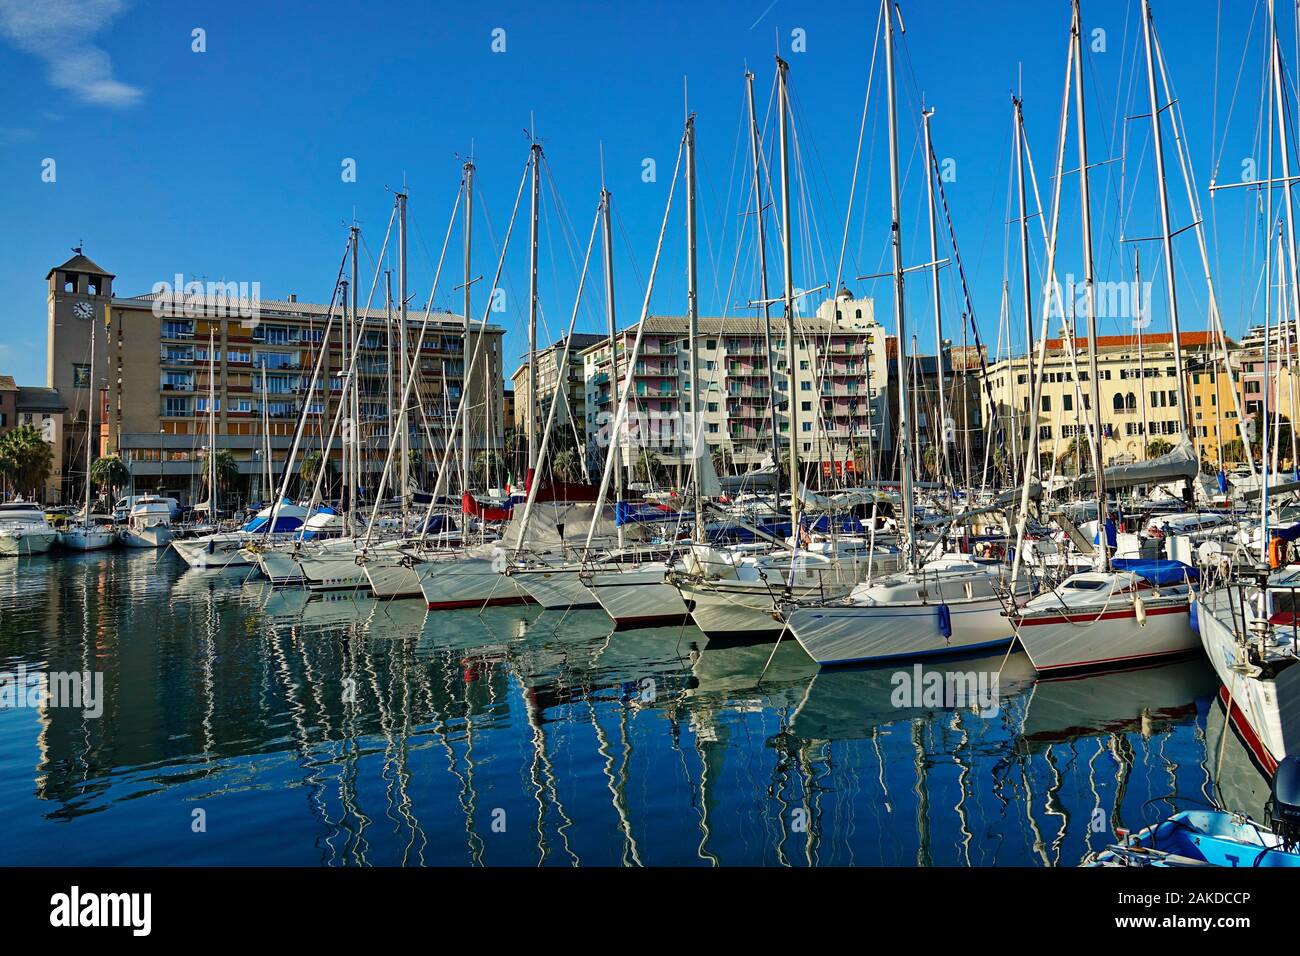 Stadtbild von Savona und Segelboote im Hafen. Savona, Italien - Januar 2020 Stockfoto